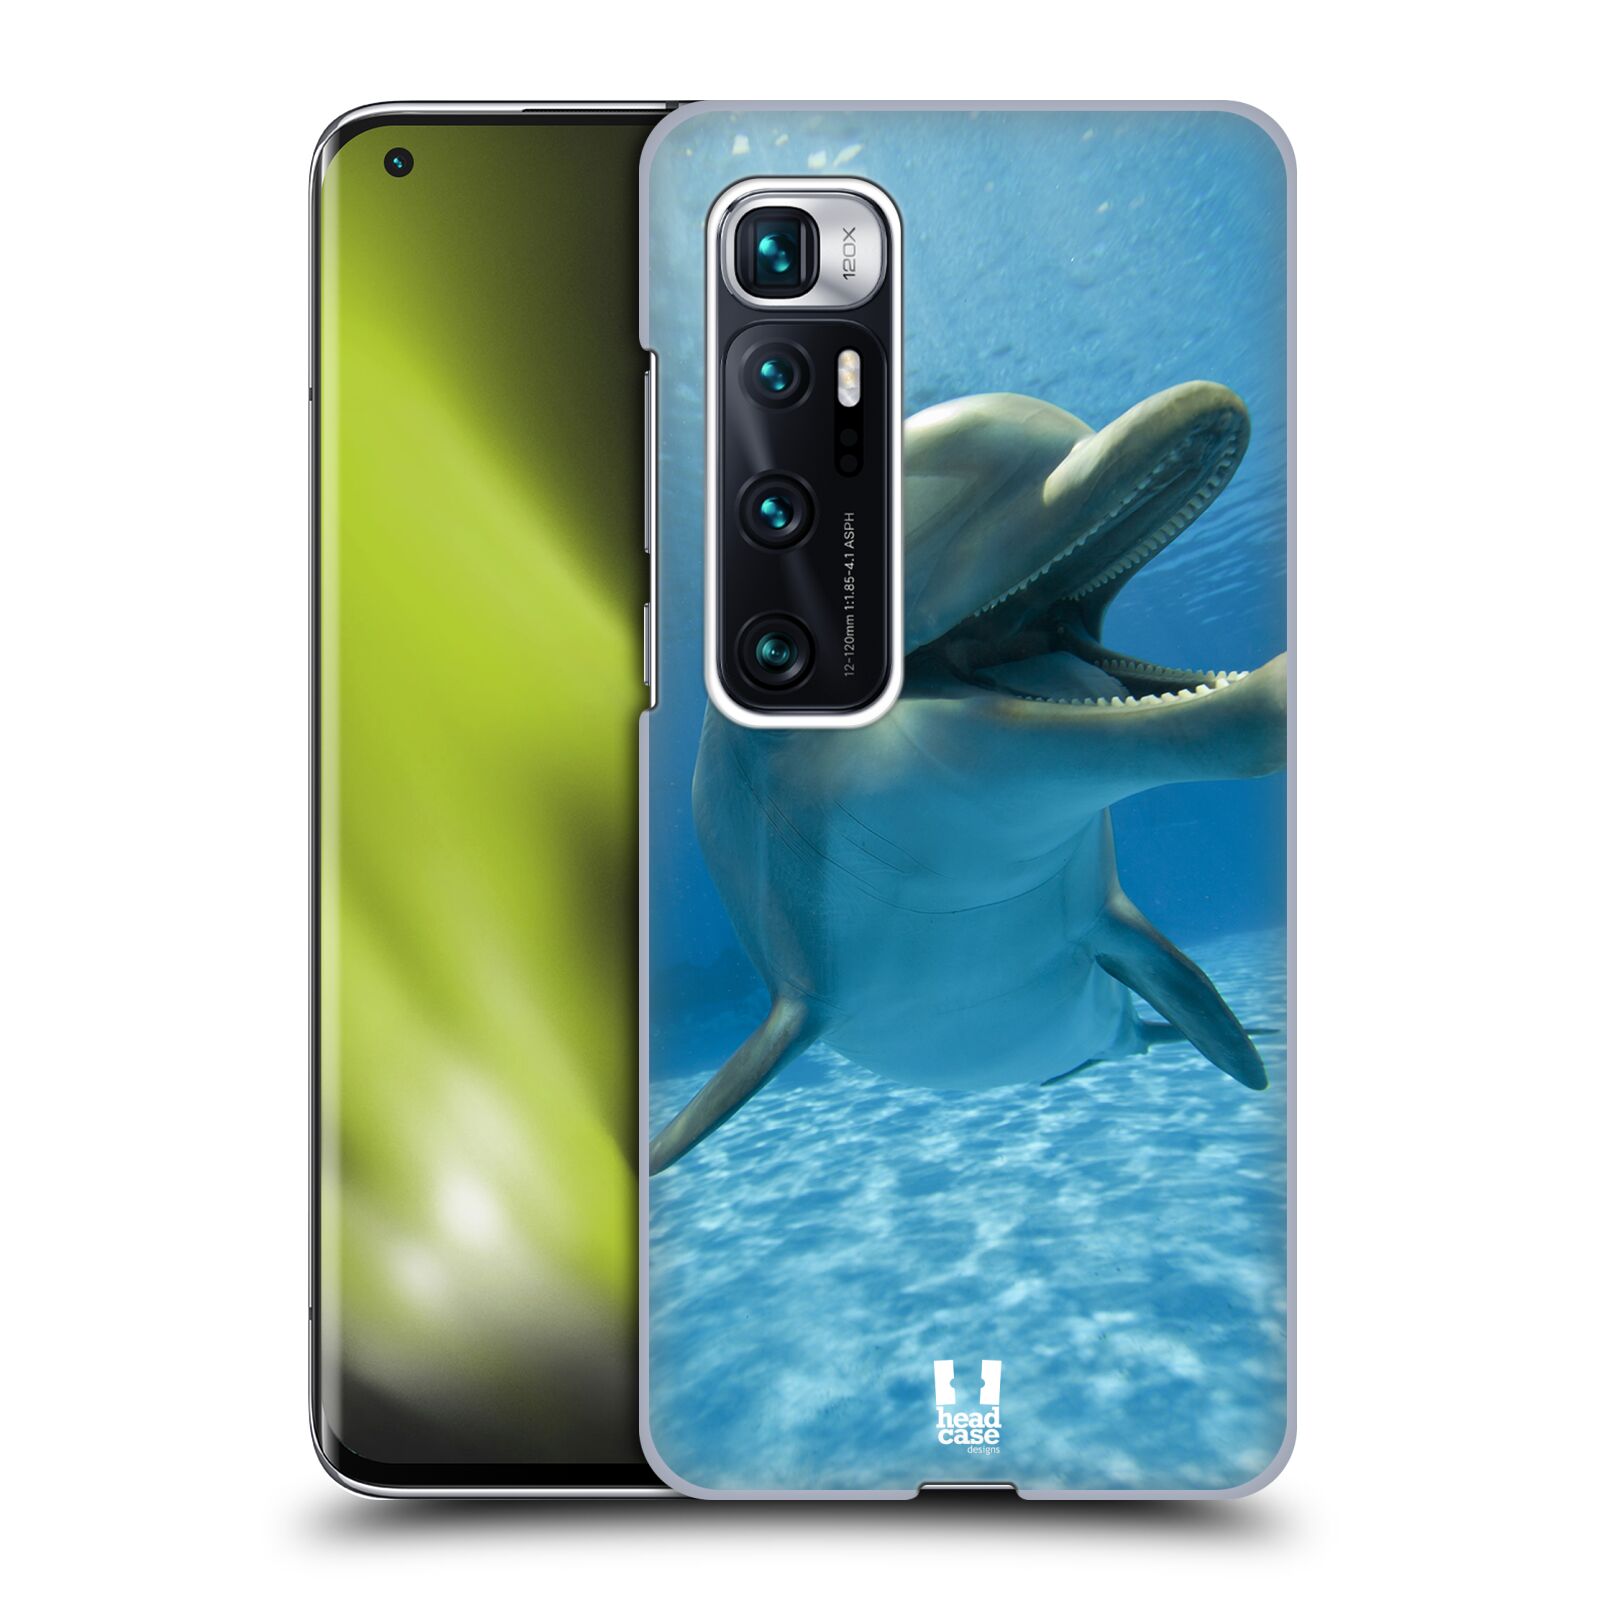 Zadní obal pro mobil Xiaomi Mi 10 Ultra / Mi 10 Ultra 5G - HEAD CASE - Svět zvířat delfín v moři